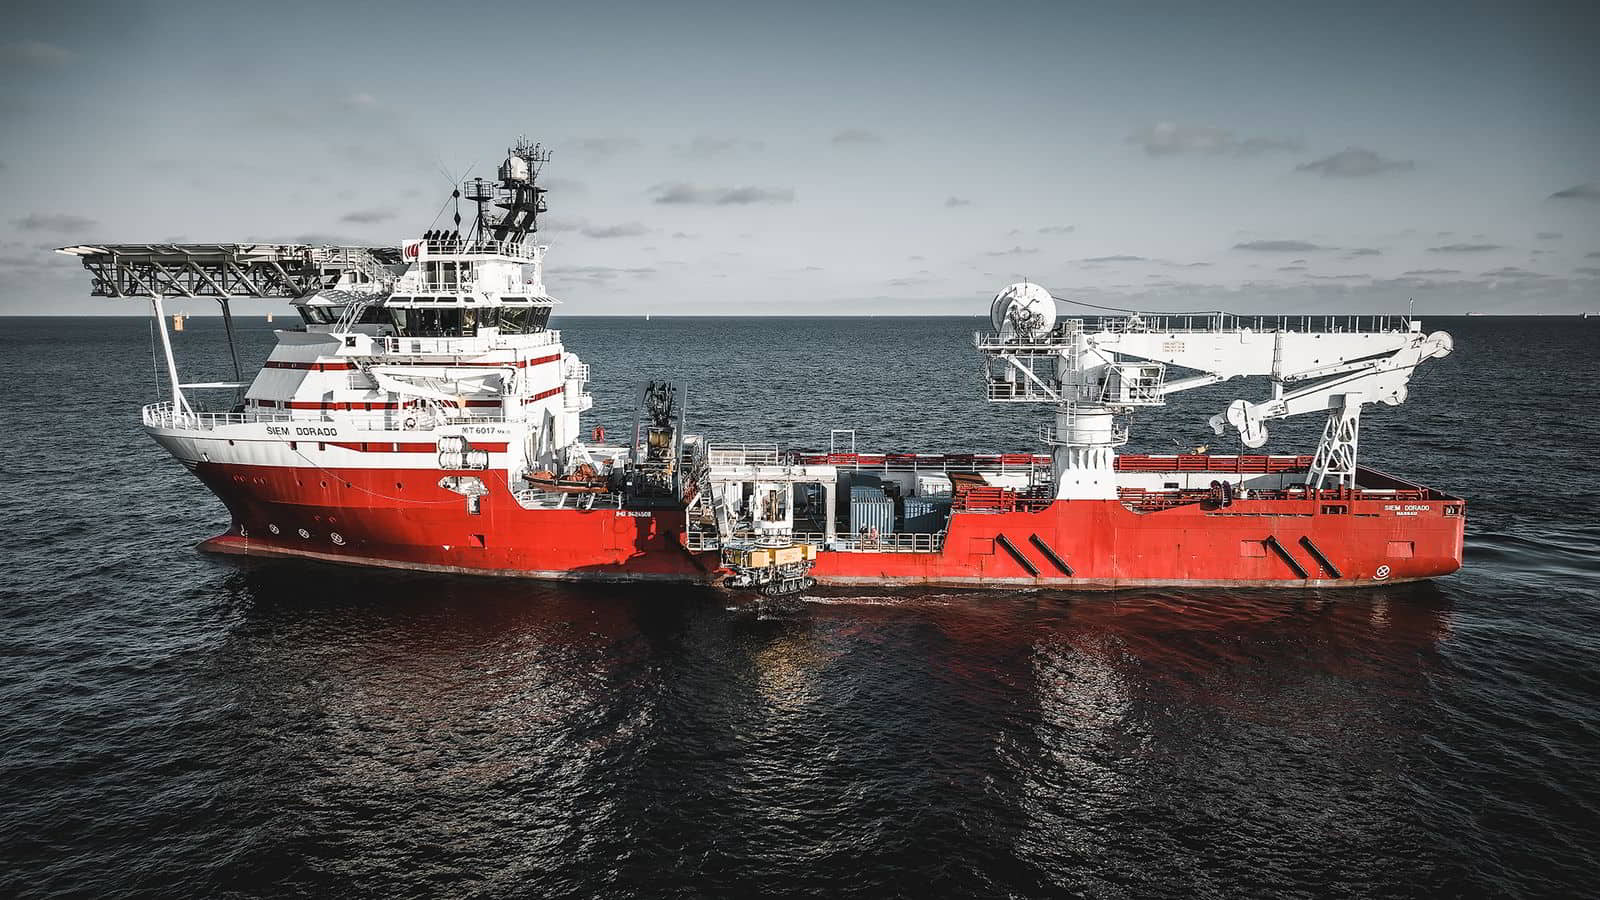 Siem vessel lands deal ‘primarily’ outside North Sea